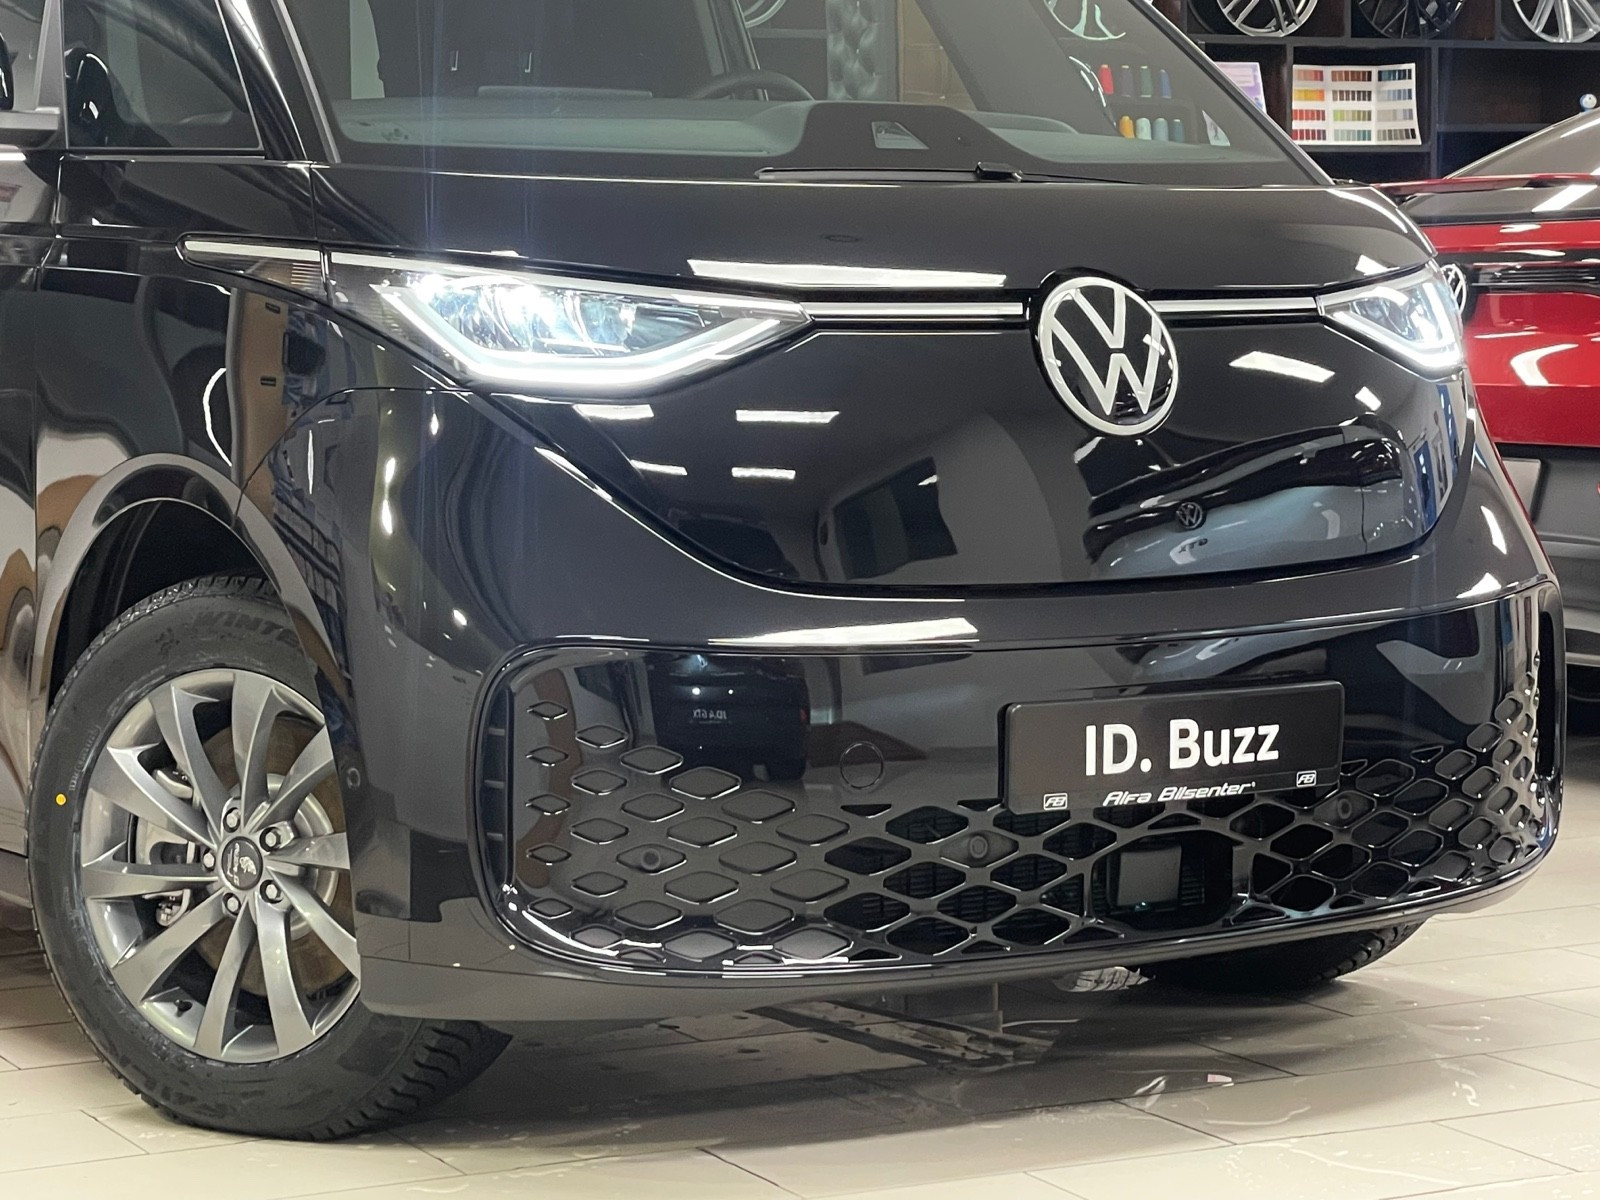 Bilde 3 av Volkswagen ID. Buzz